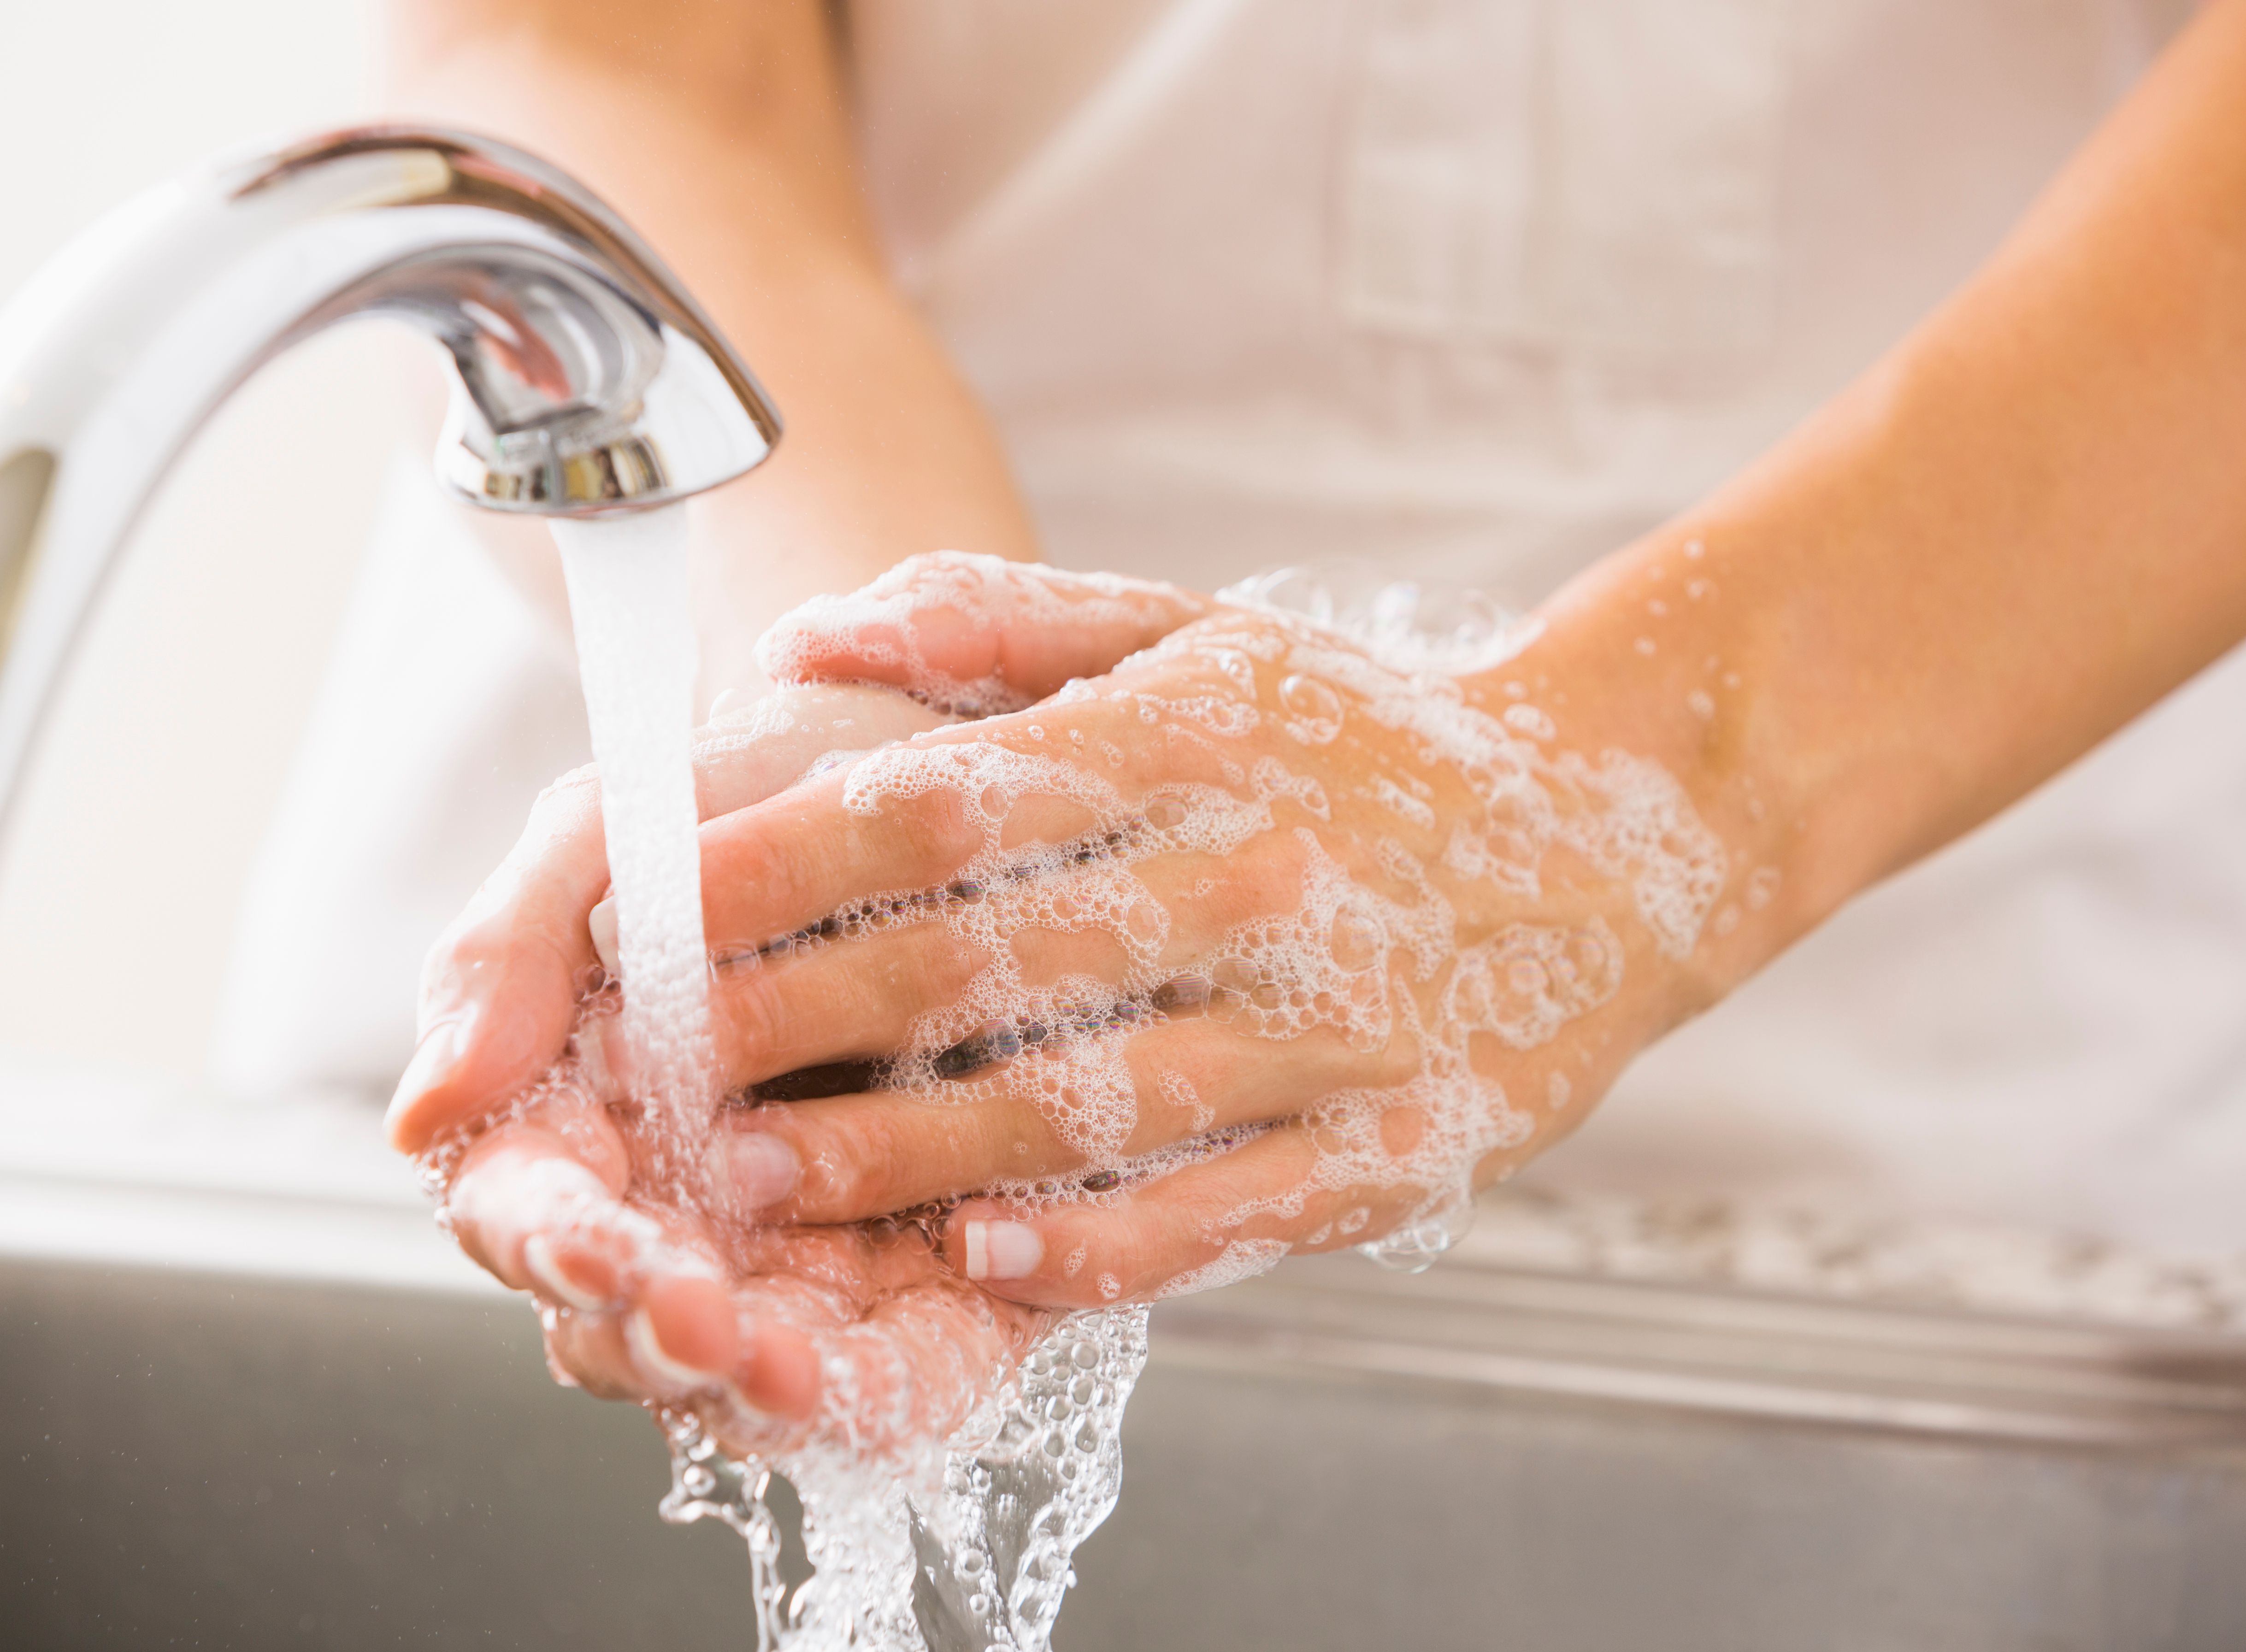 Bester Schutz vor dem Coronavirus: Gründliches Händewaschen